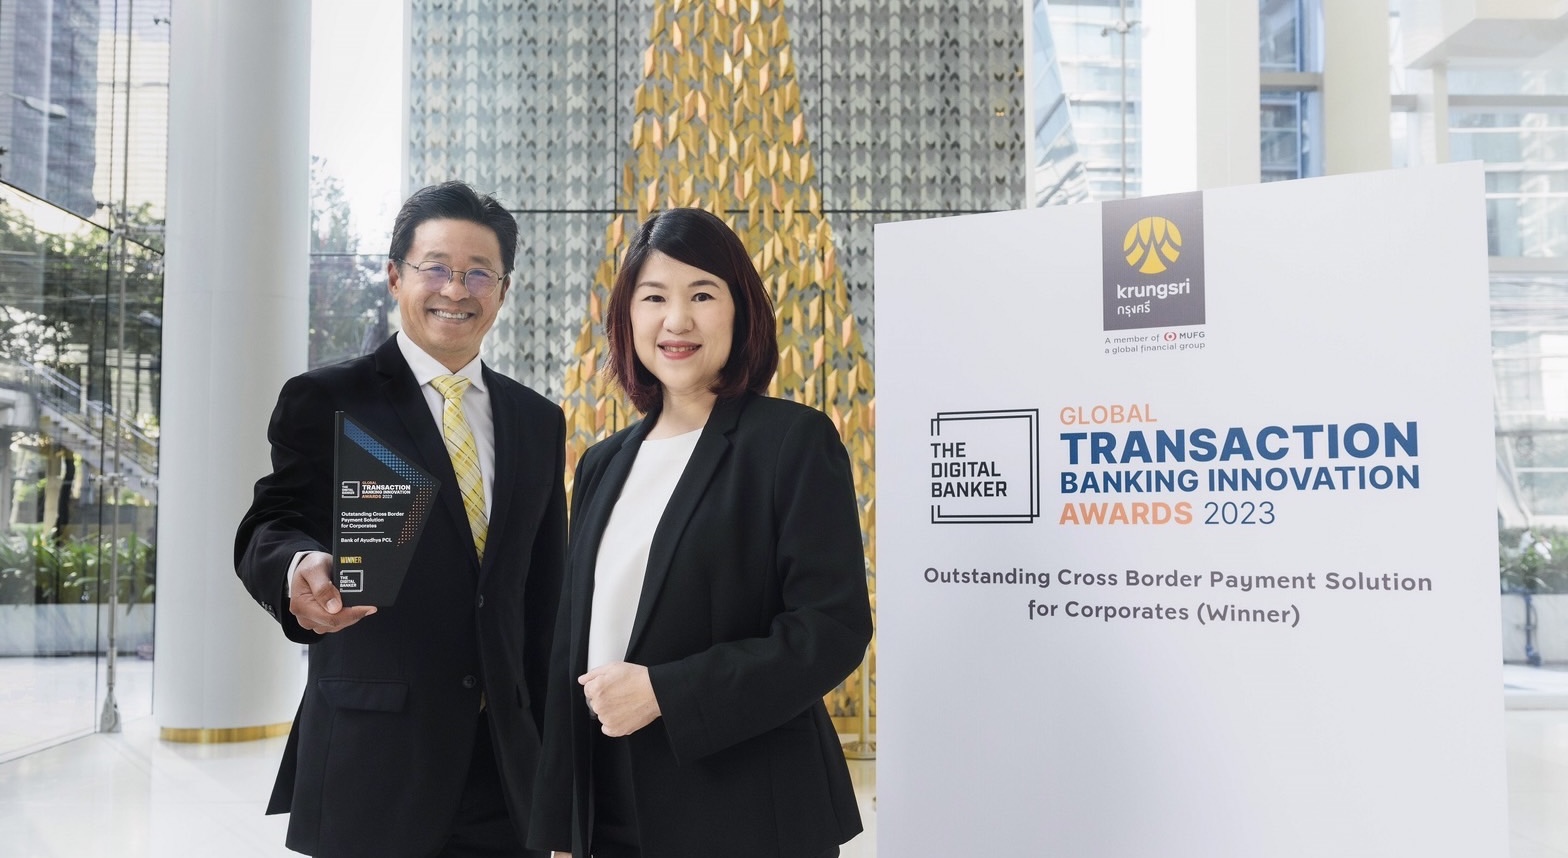 กรุงศรีคว้ารางวัลชนะเลิศด้านธุรกรรมการชำระเงินข้ามประเทศจากเวที Global Transaction Banking Innovation Awards 2023